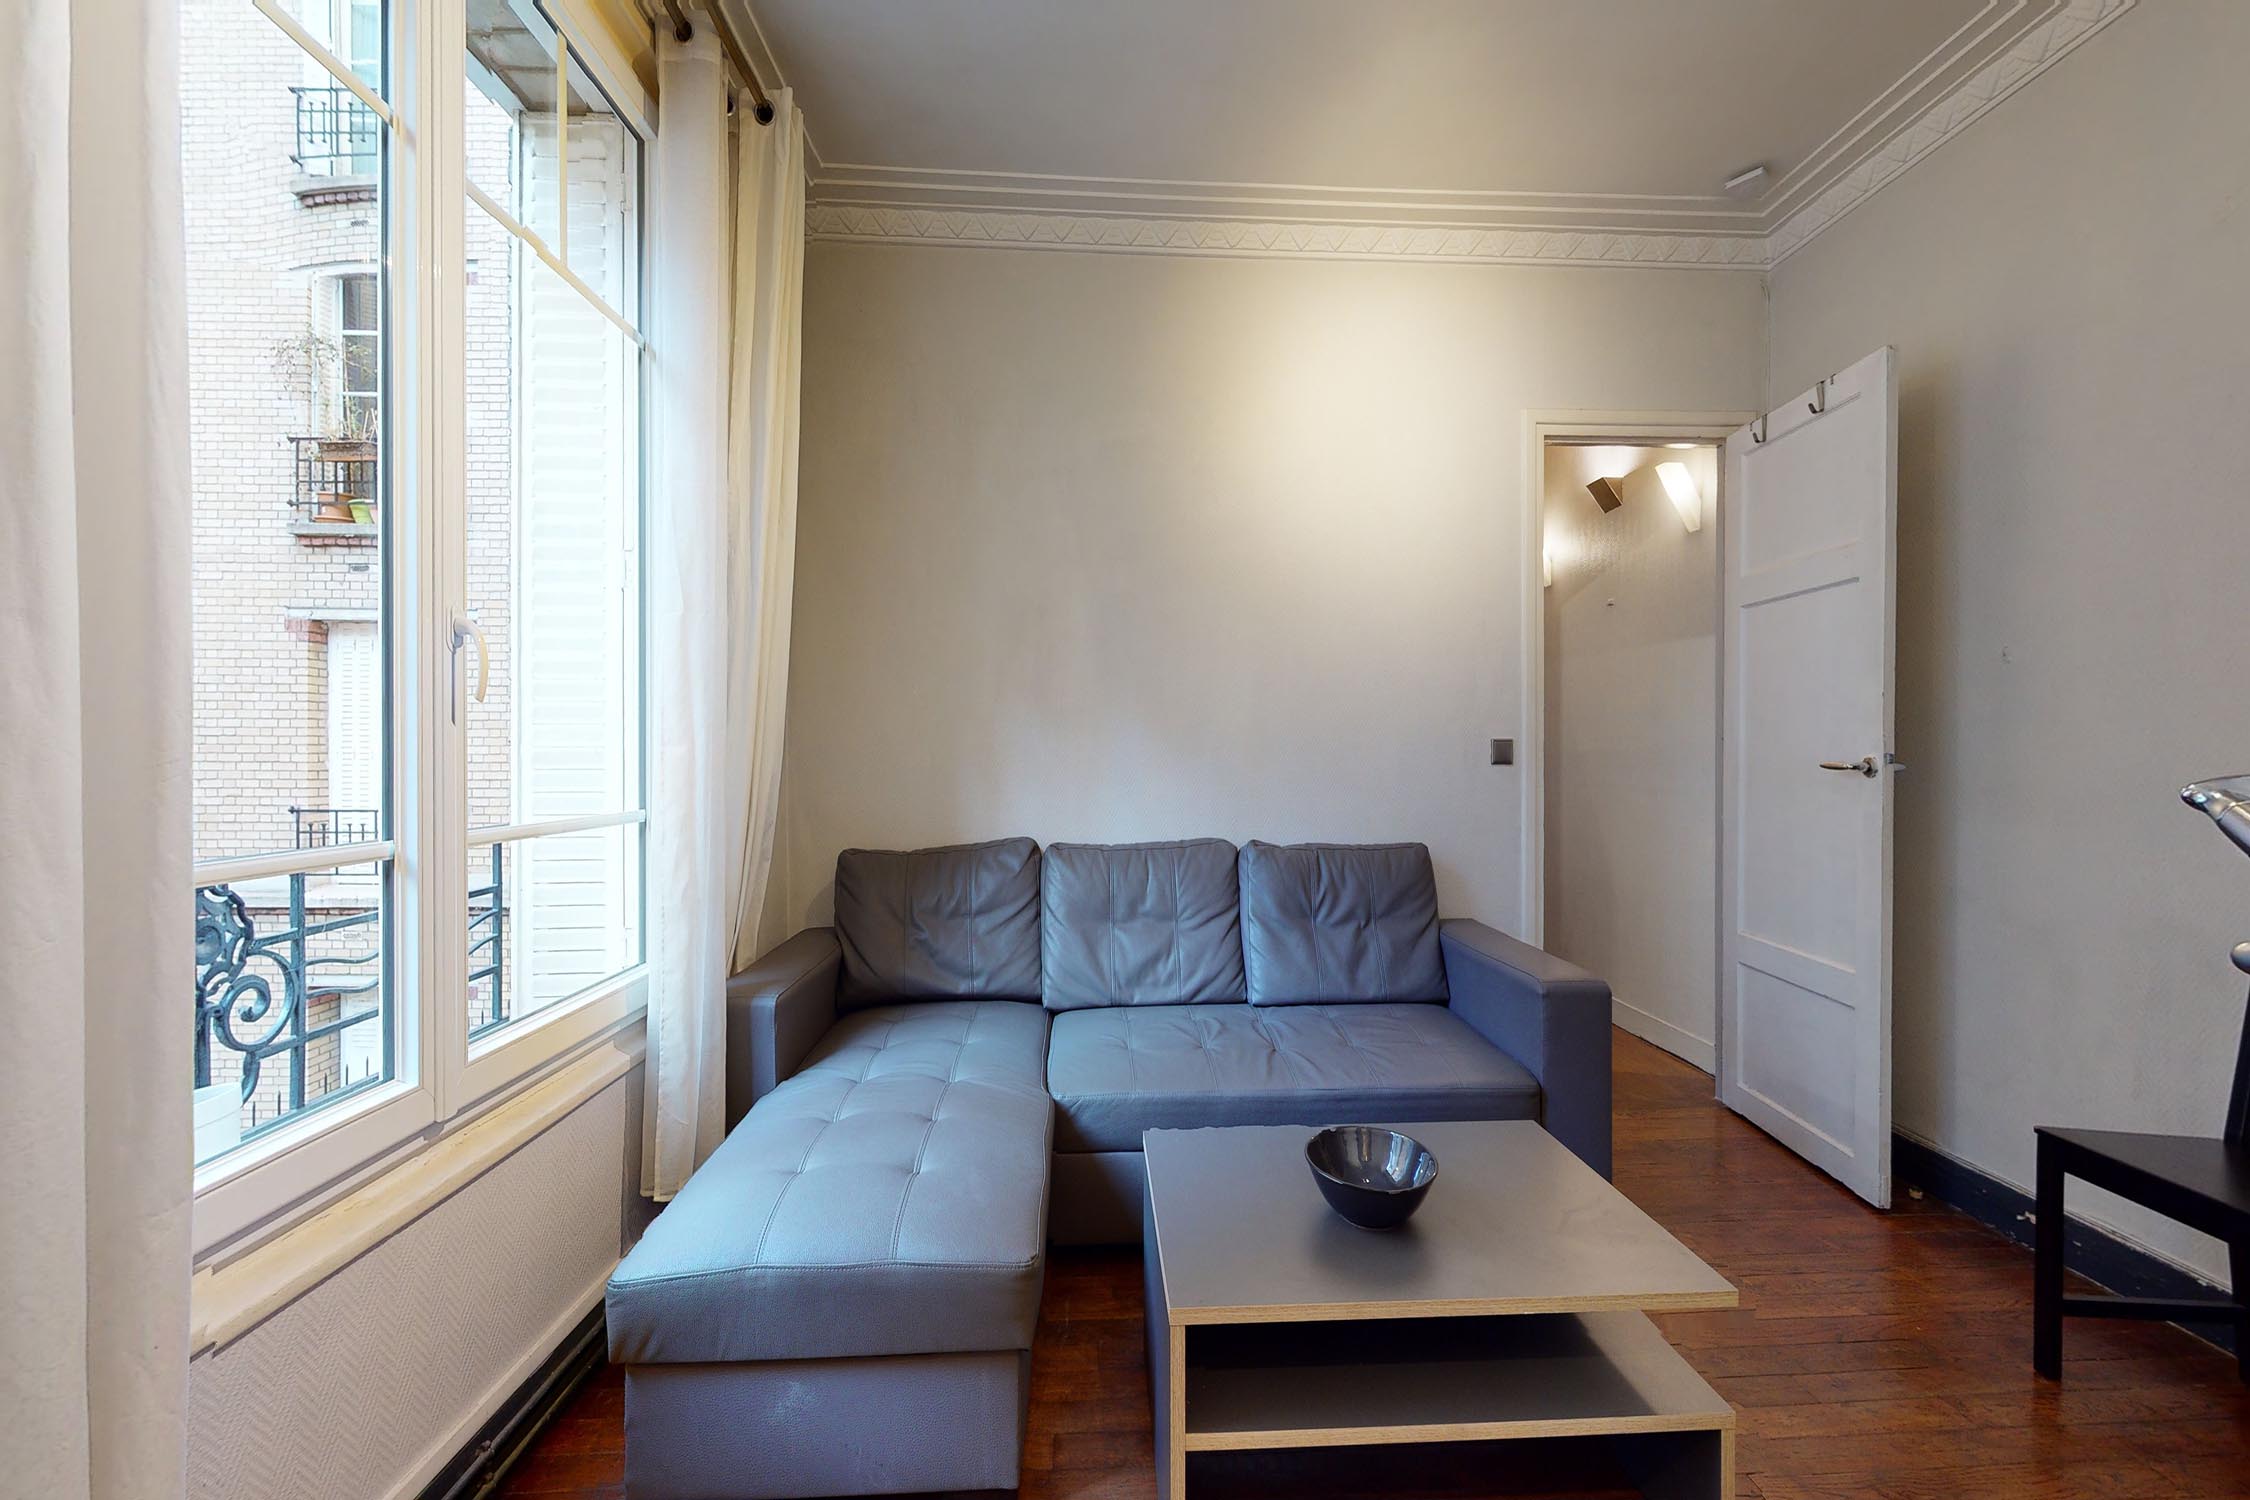 Appartement location Zola meublé 75015 Paris 15ème